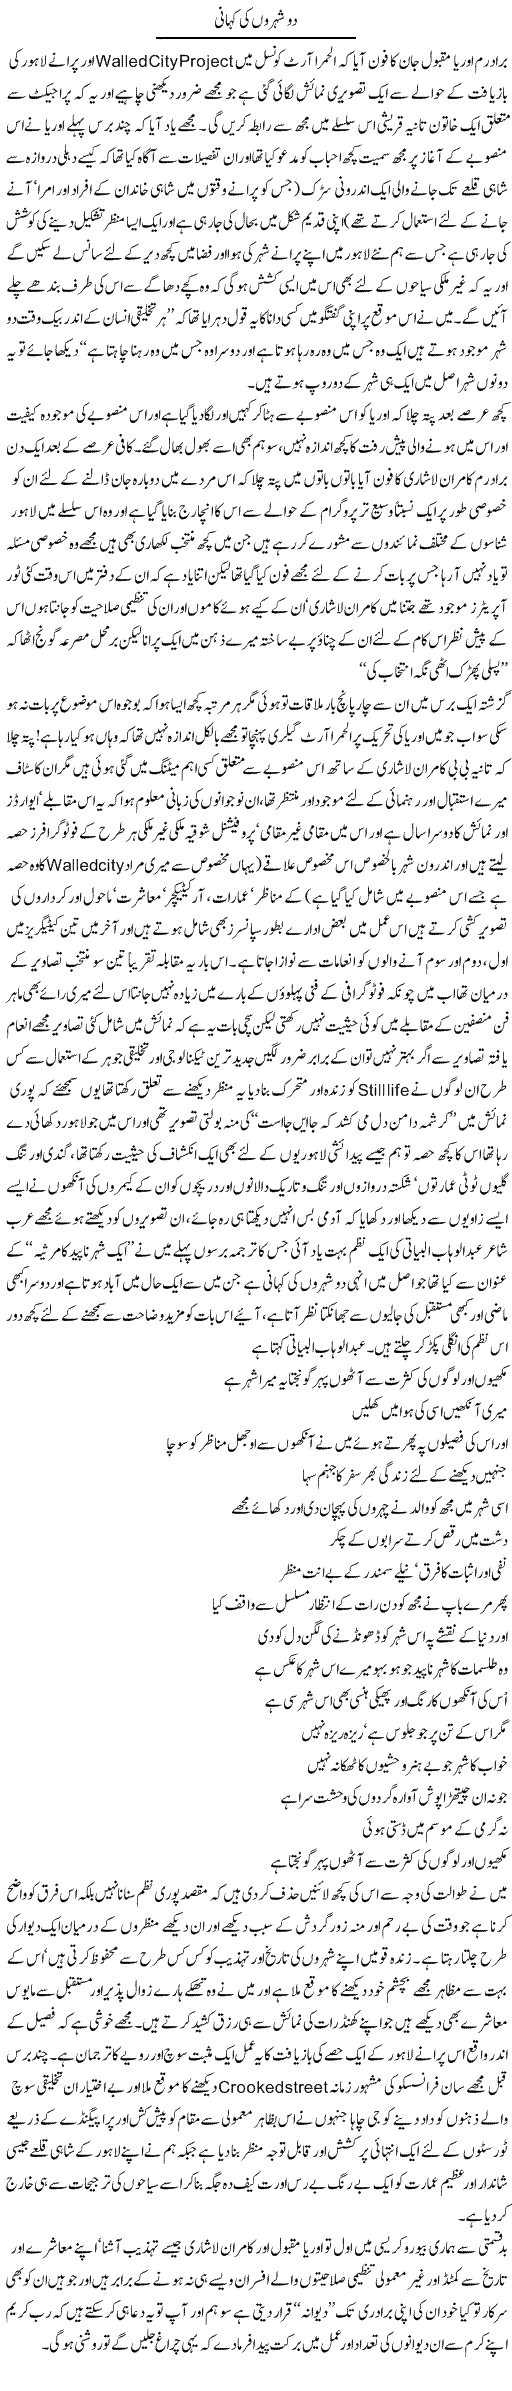 Do Shehro Ki Kahani | Amjad Islam Amjad | Daily Urdu Columns